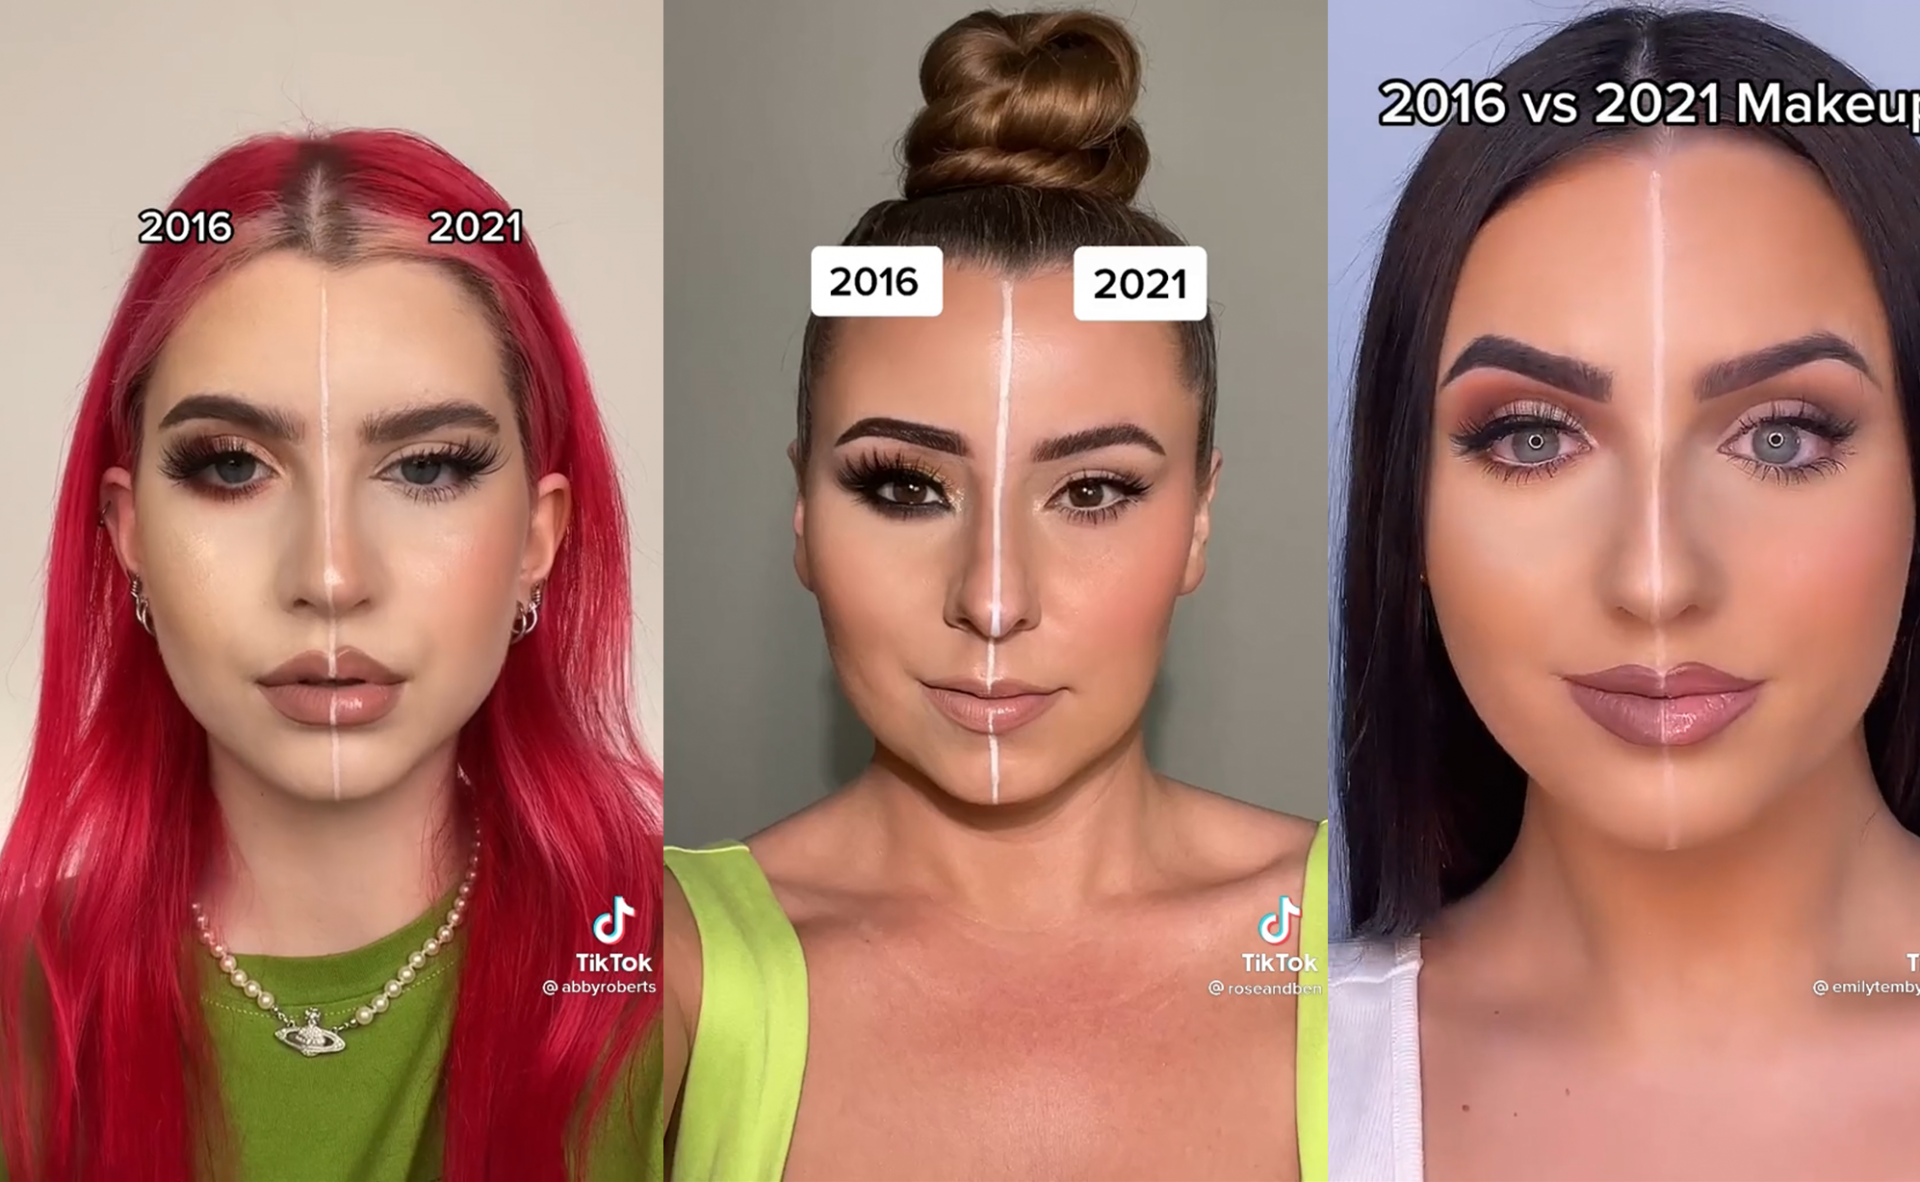 De 2016 vs. 2021 make-up challenge gaat viral op TikTok